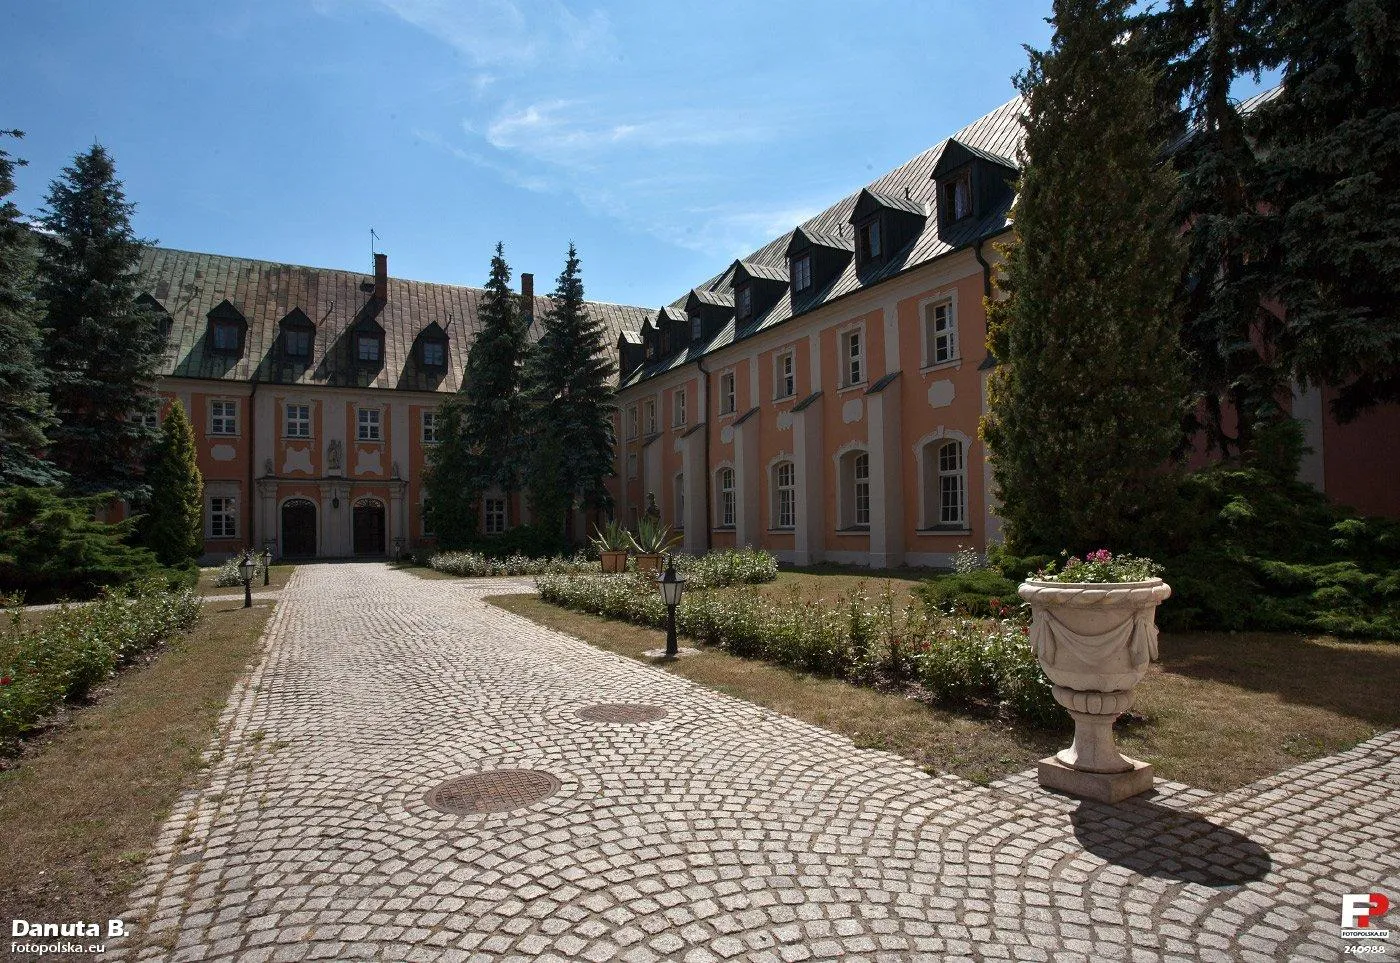 Photo showing: Wewnętrzny dziedziniec otoczony budynkami seminarium.